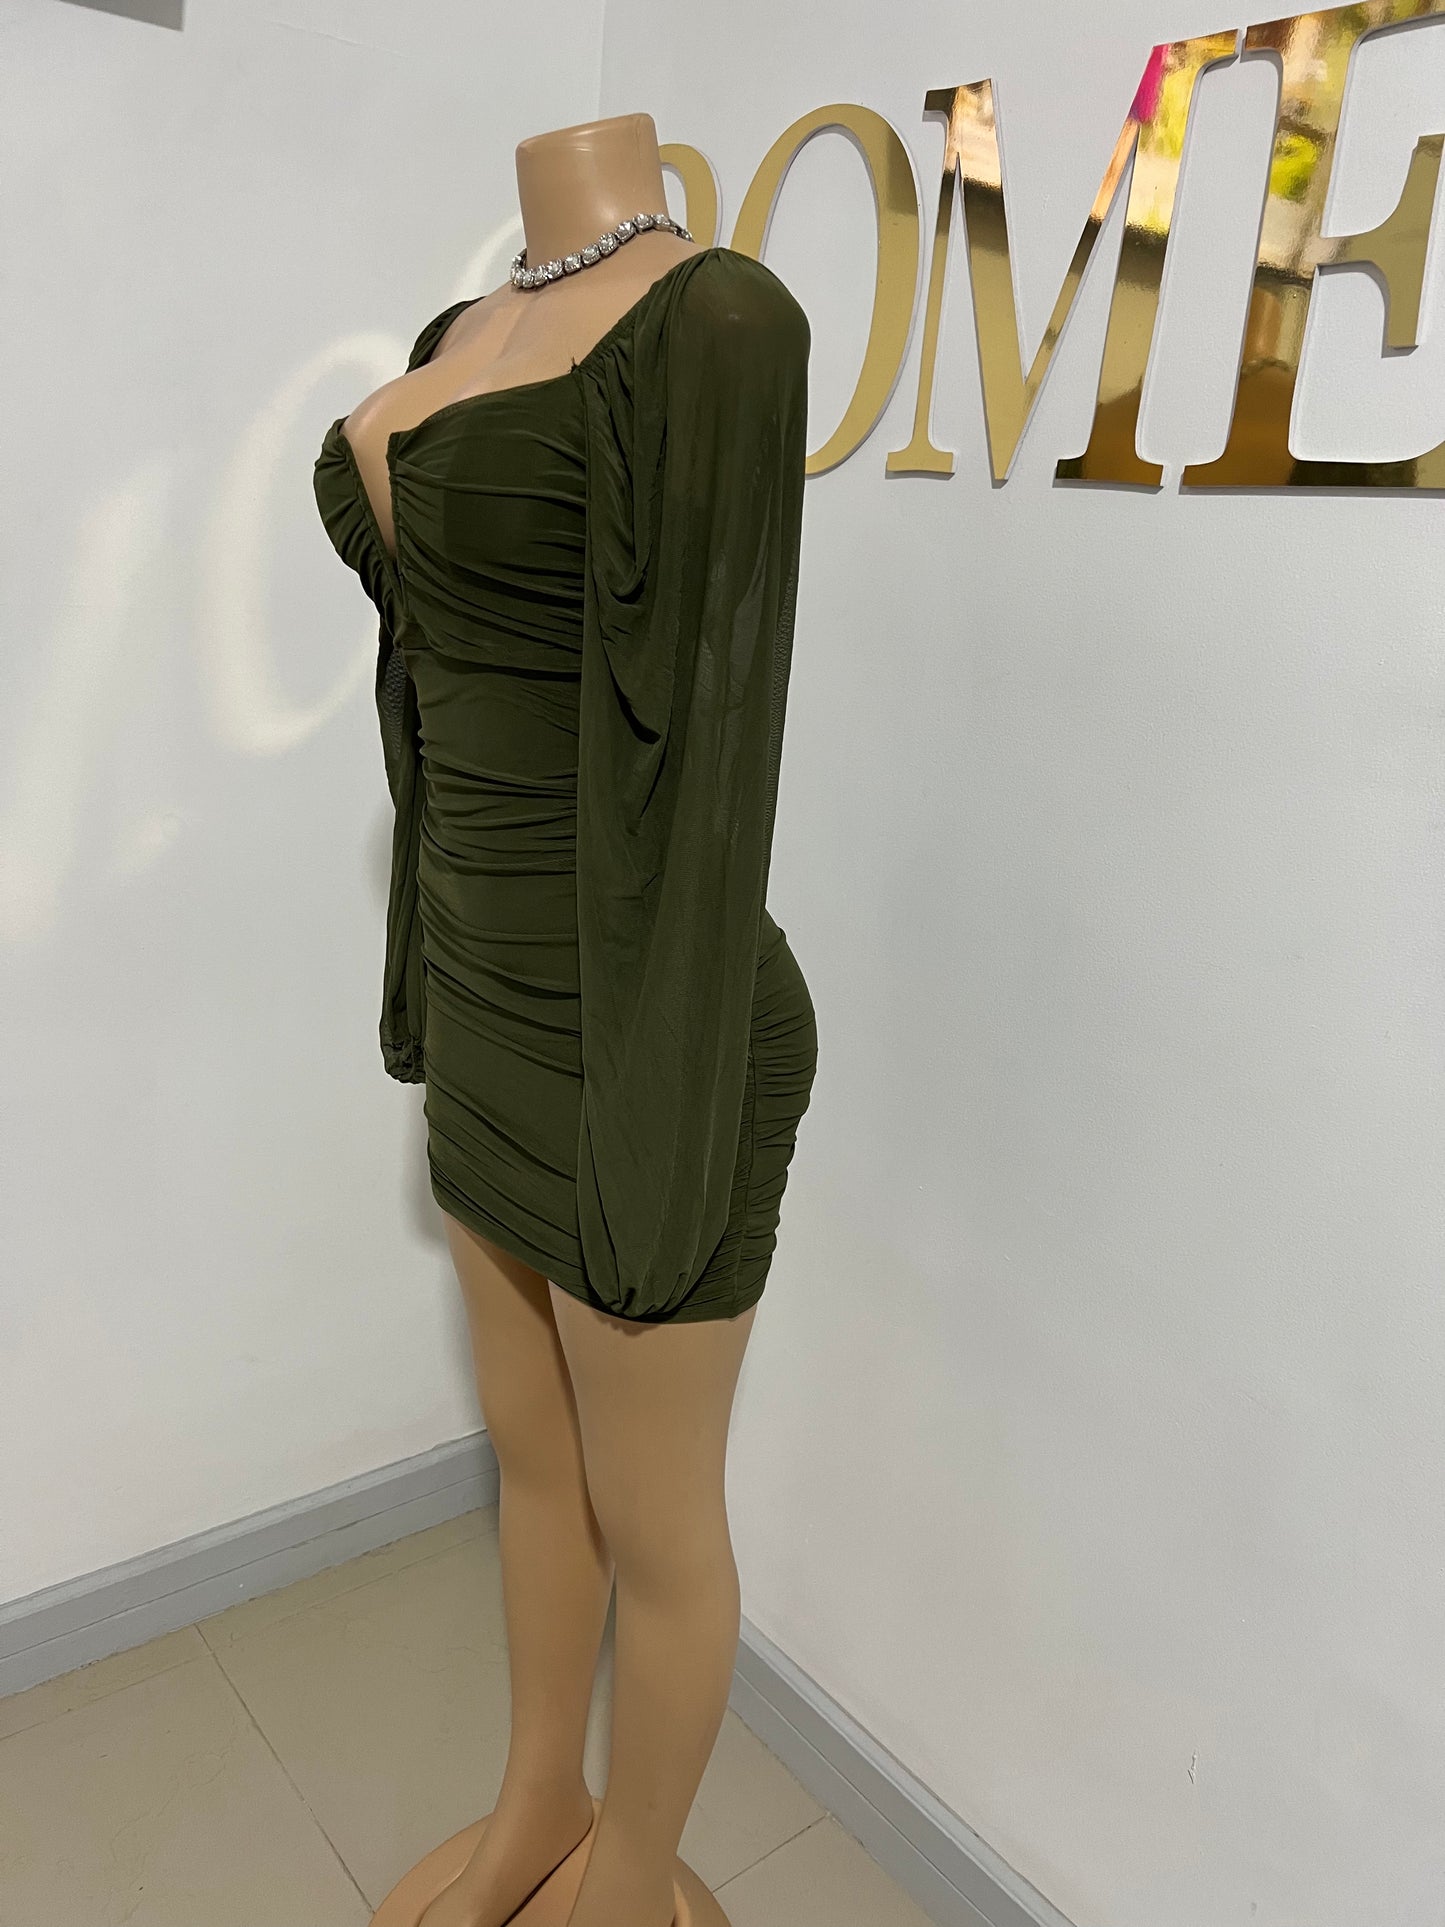 Aubrey Dress (Army Green)